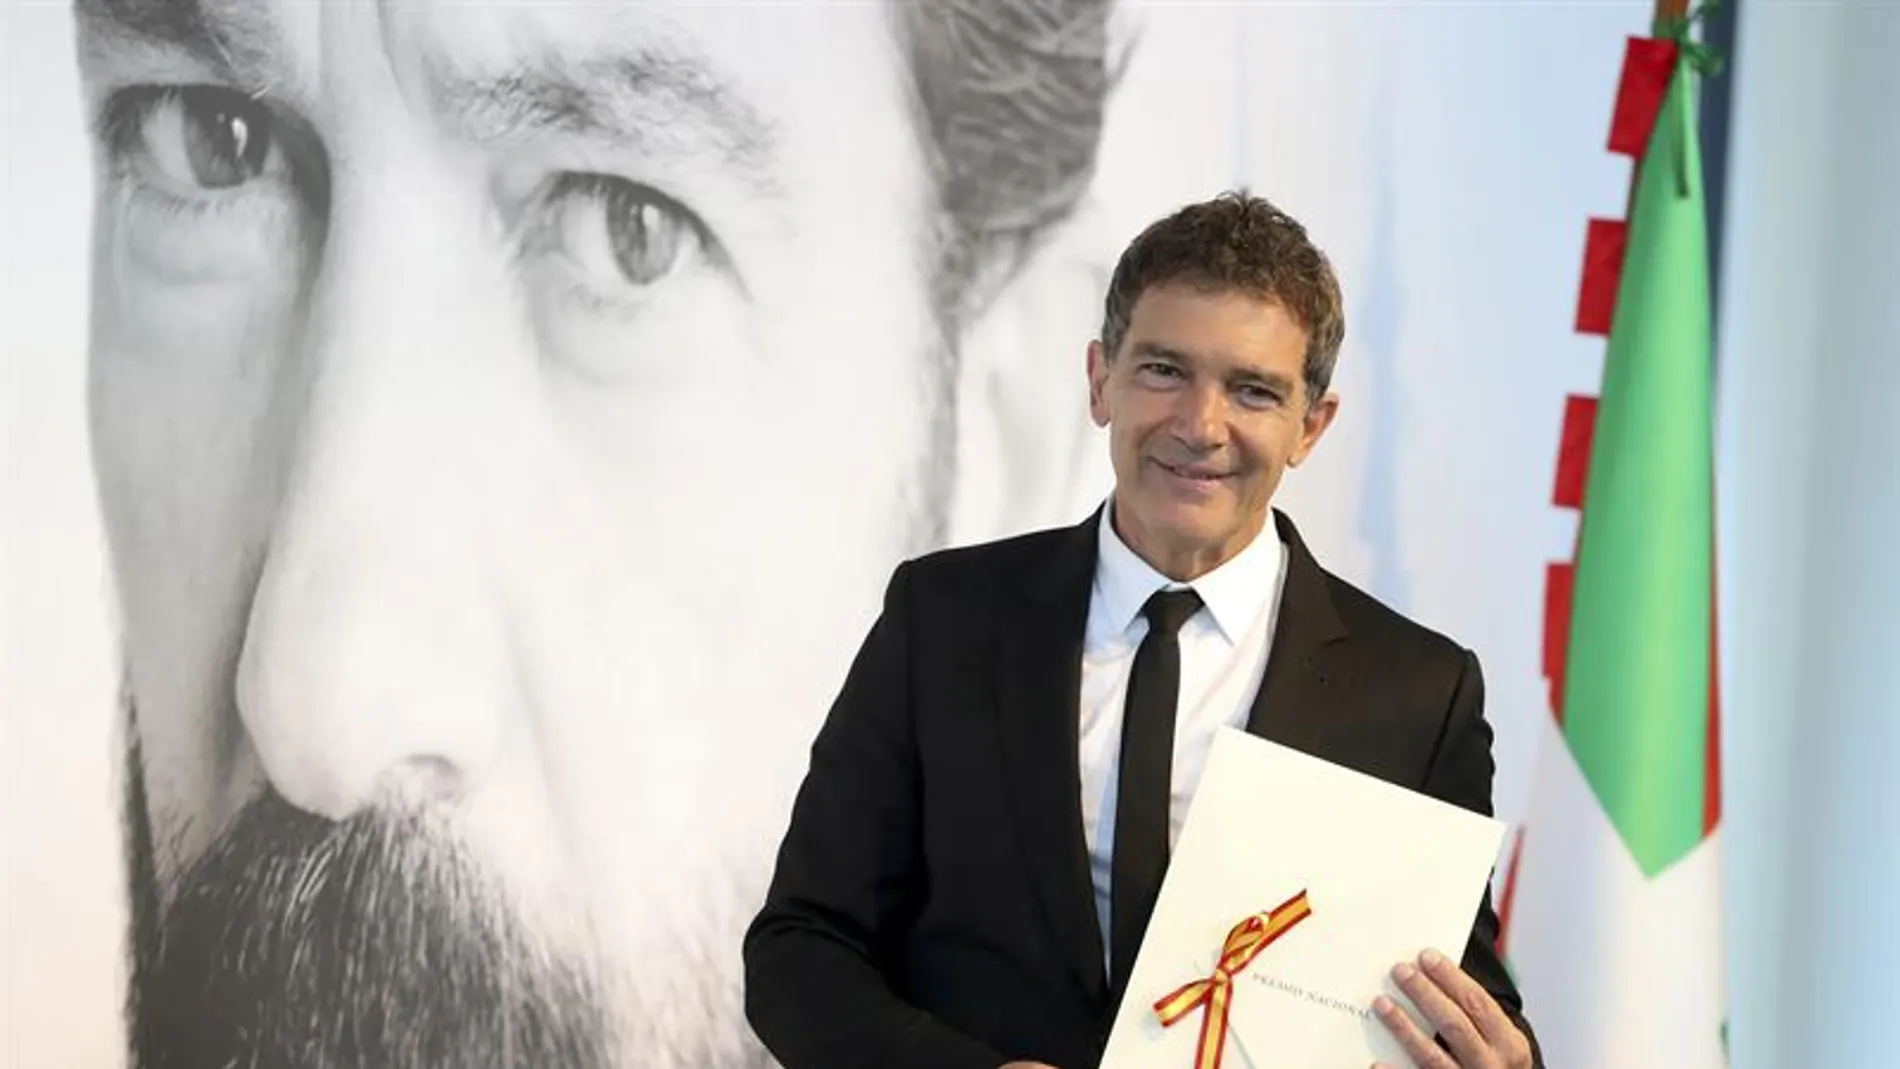 Antonio Banderas agradece el Premio Nacional de Cinematografía en reconocimiento a su carrera como actor, director y productor